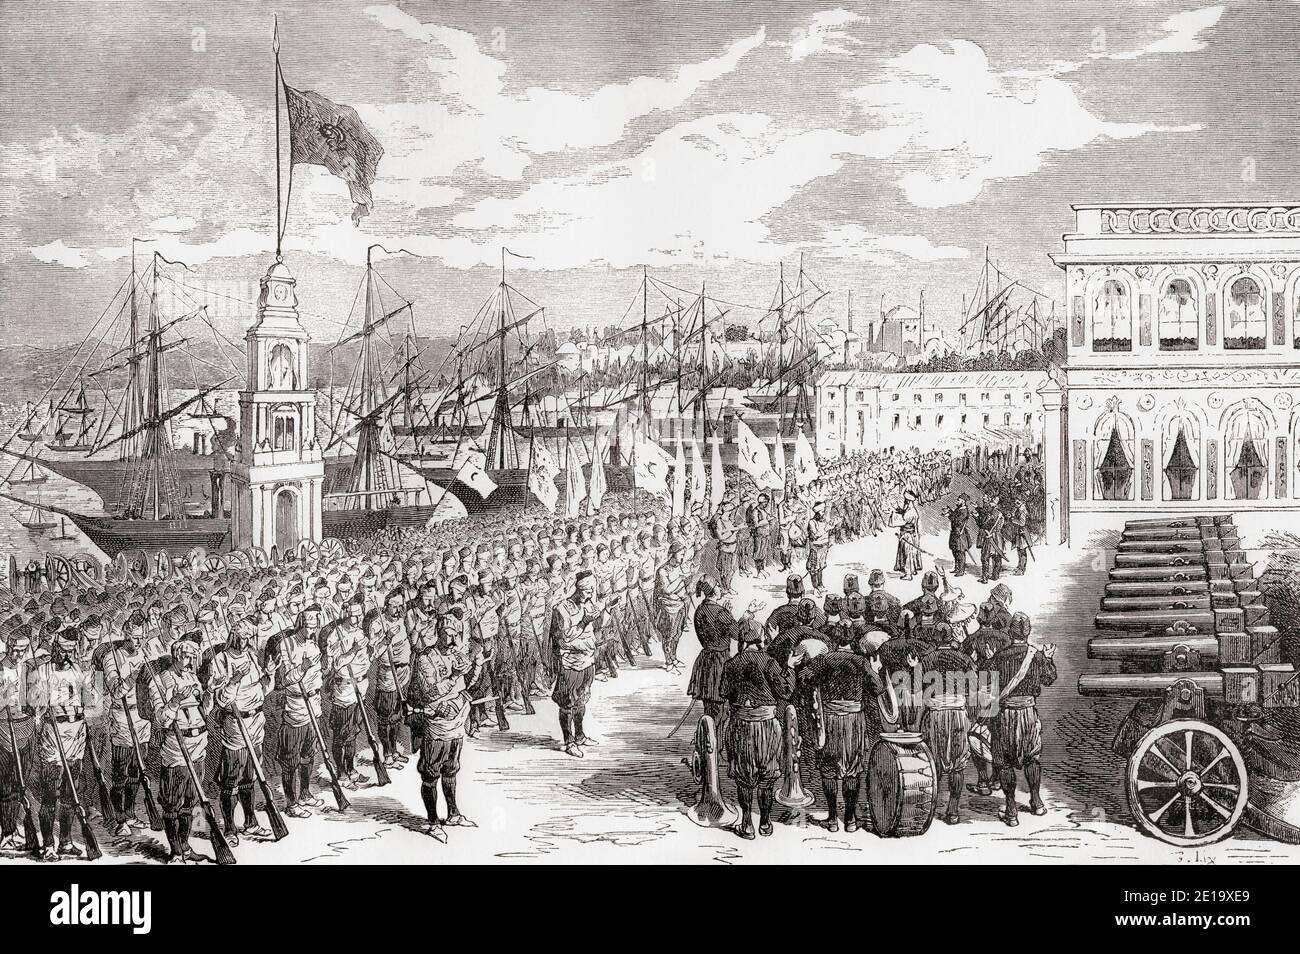 Les bataillons de l'armée Batumi débarquent à Trabzon aka Trebizond, en Turquie, pendant la guerre russo-turque (1877-1878). De Russes et Turcs, la guerre d'Orient, publié en 1878 Banque D'Images